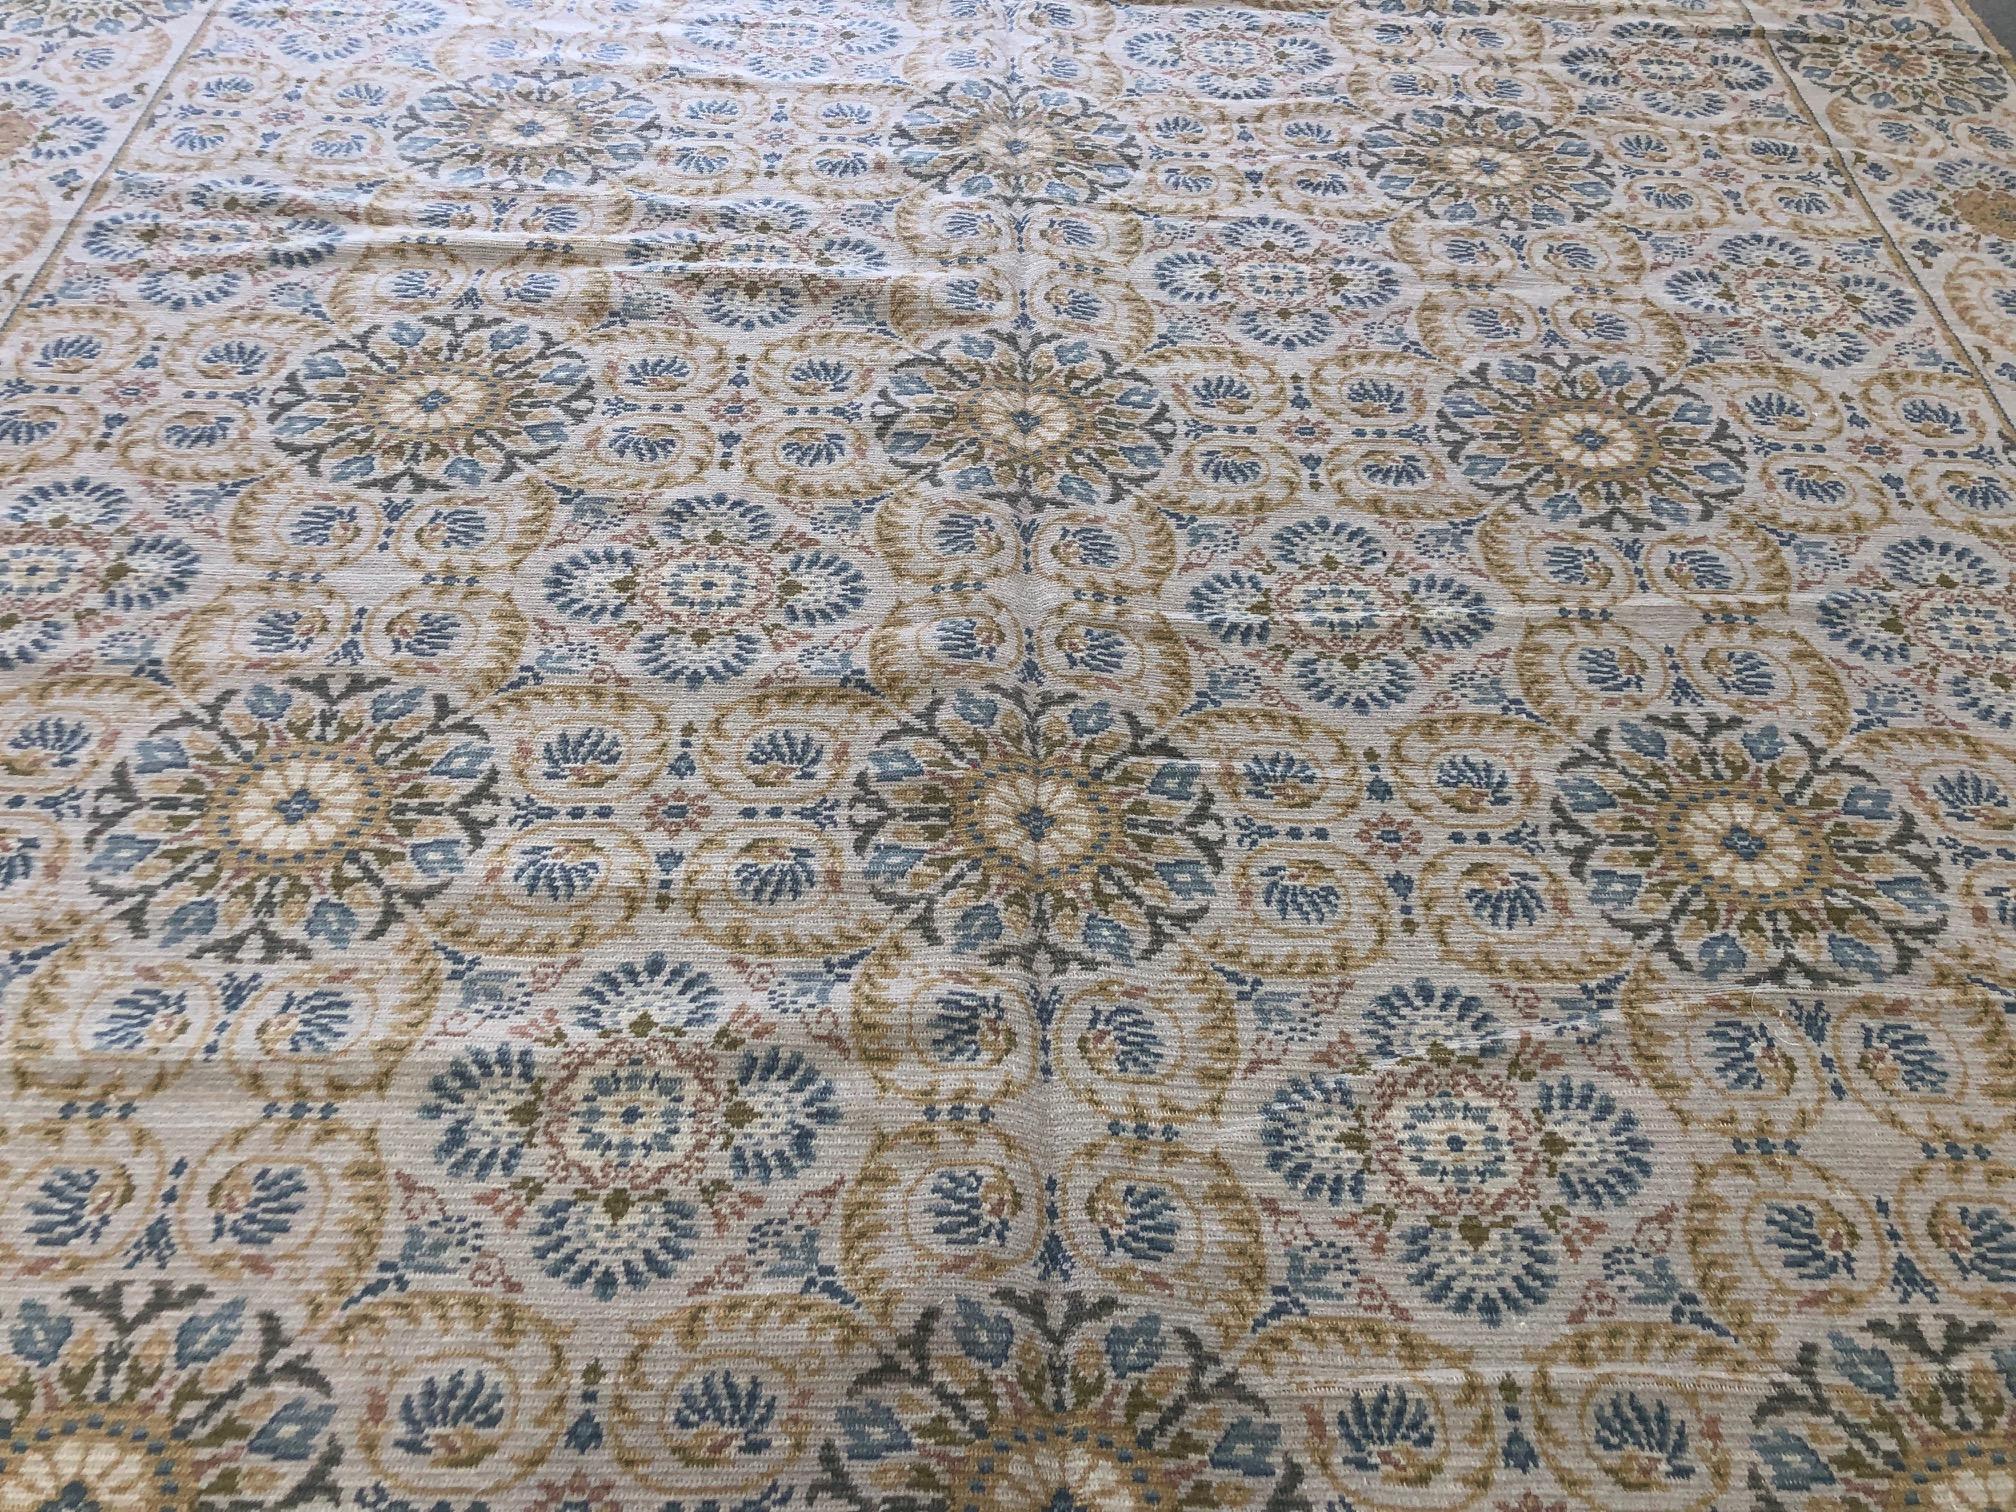 Dieser helle und ansprechende blau-goldene Teppich mit Blumenmuster erinnert an einen Fliesenboden mit der Wärme und Weichheit eines Teppichs. Handgeknüpfte Wolle.